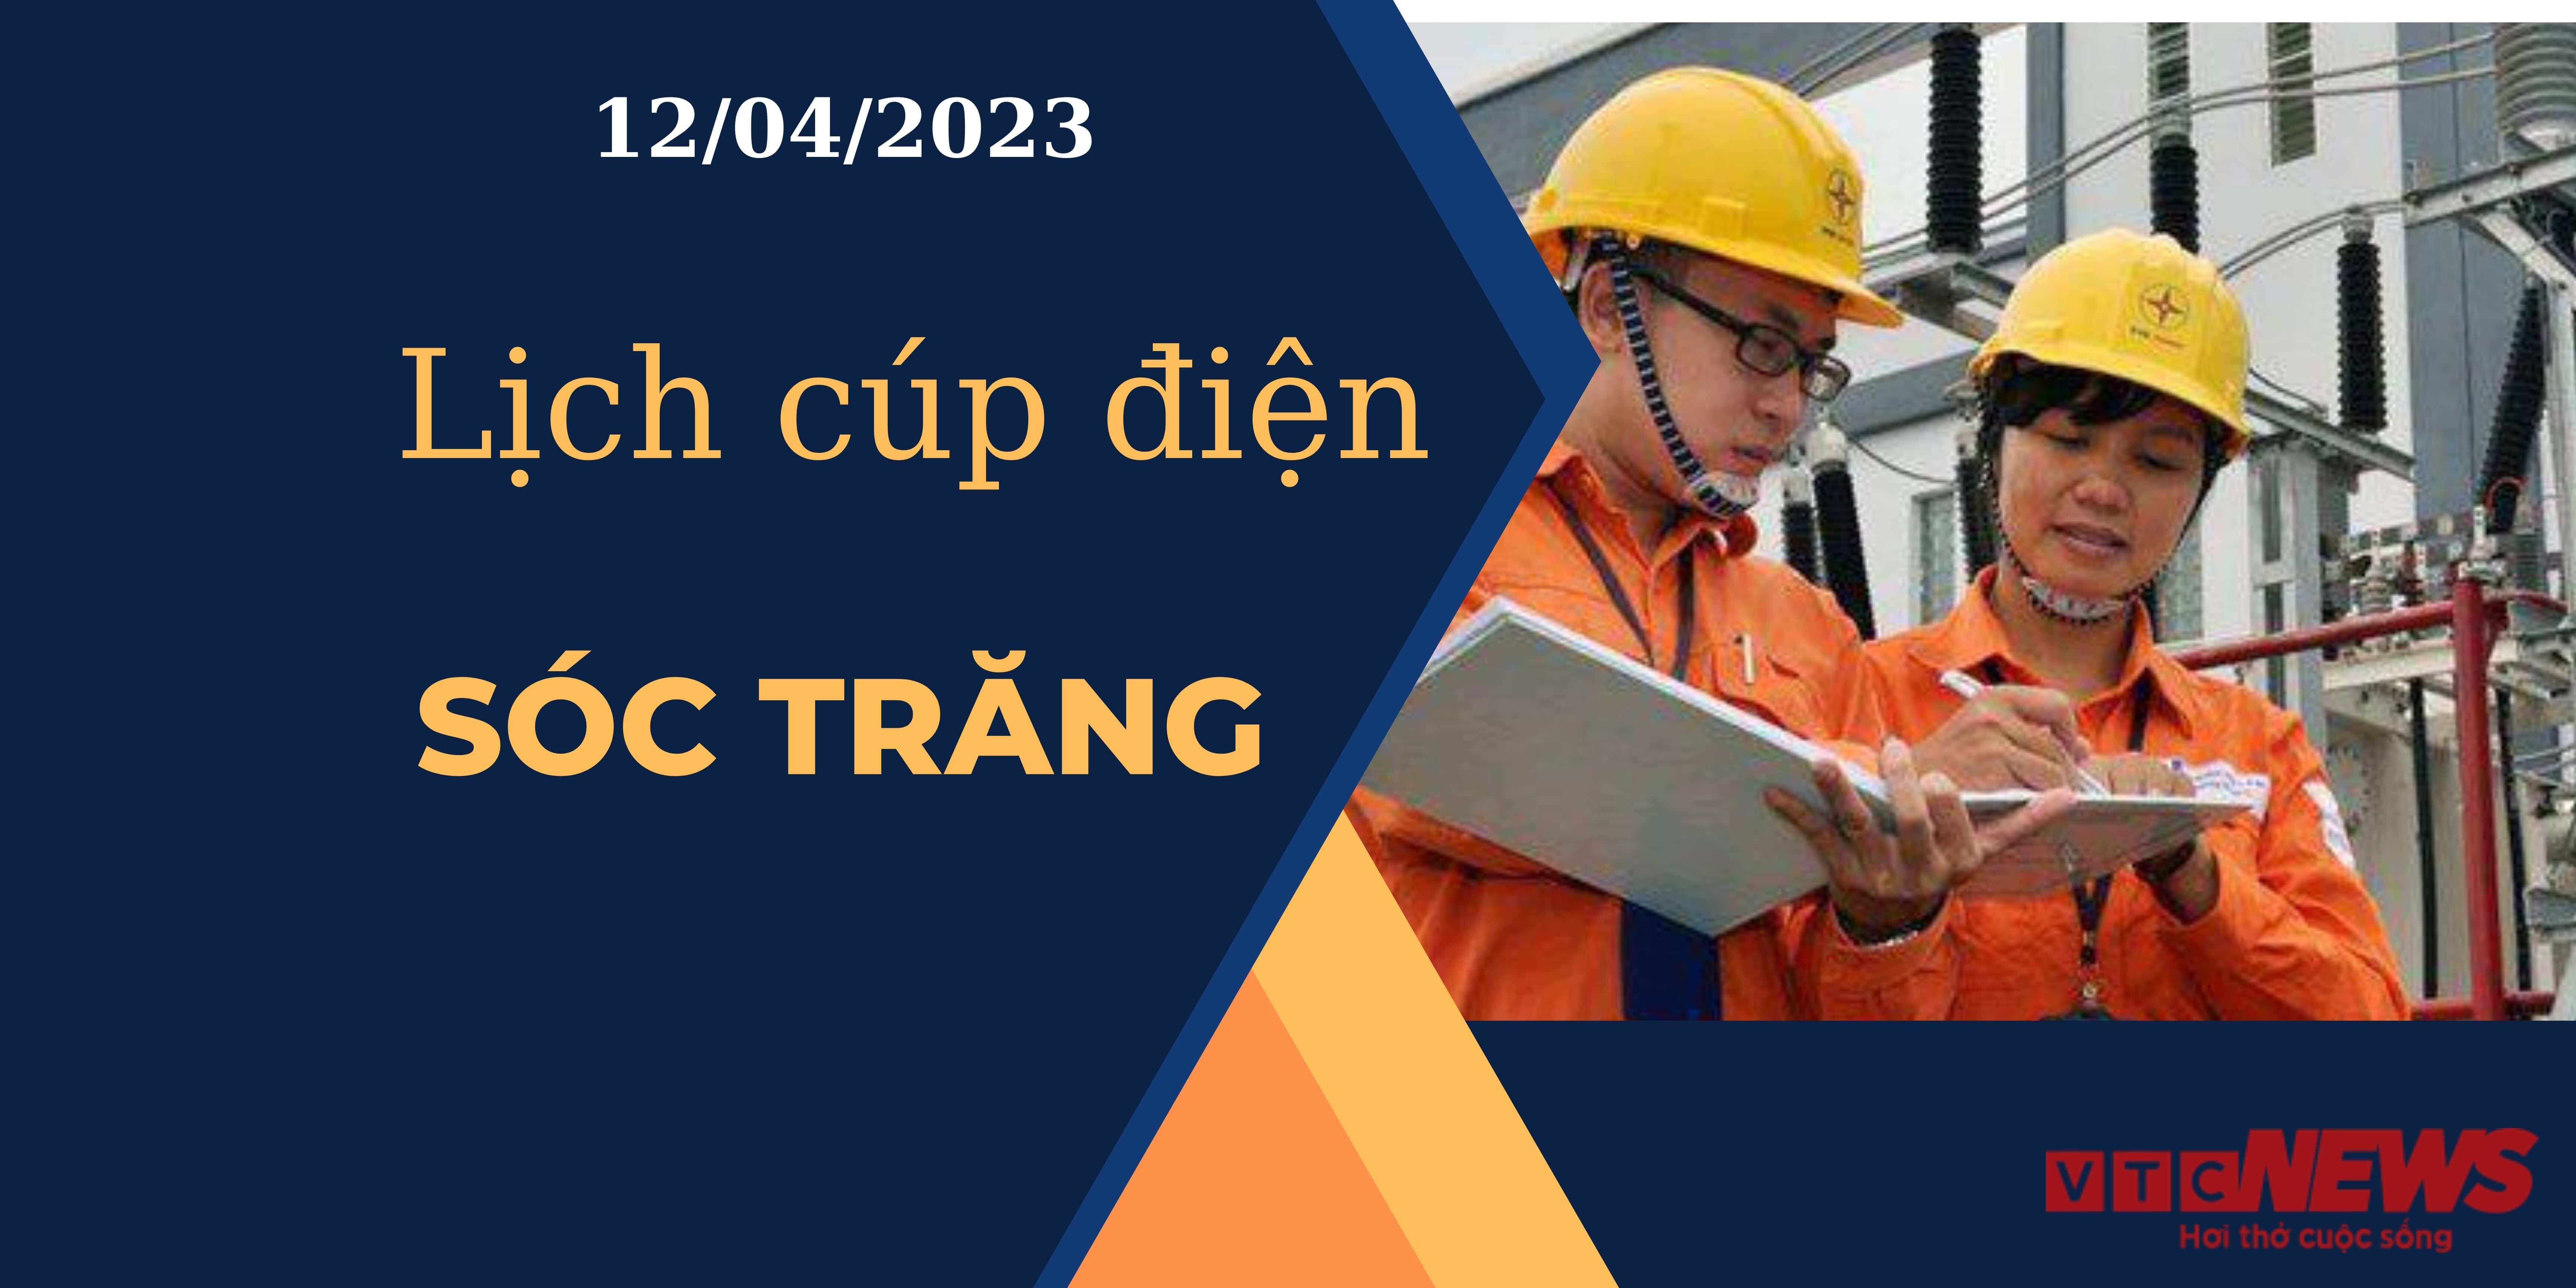 Lịch cúp điện hôm nay ngày 12/04/2023 tại Sóc Trăng - 1